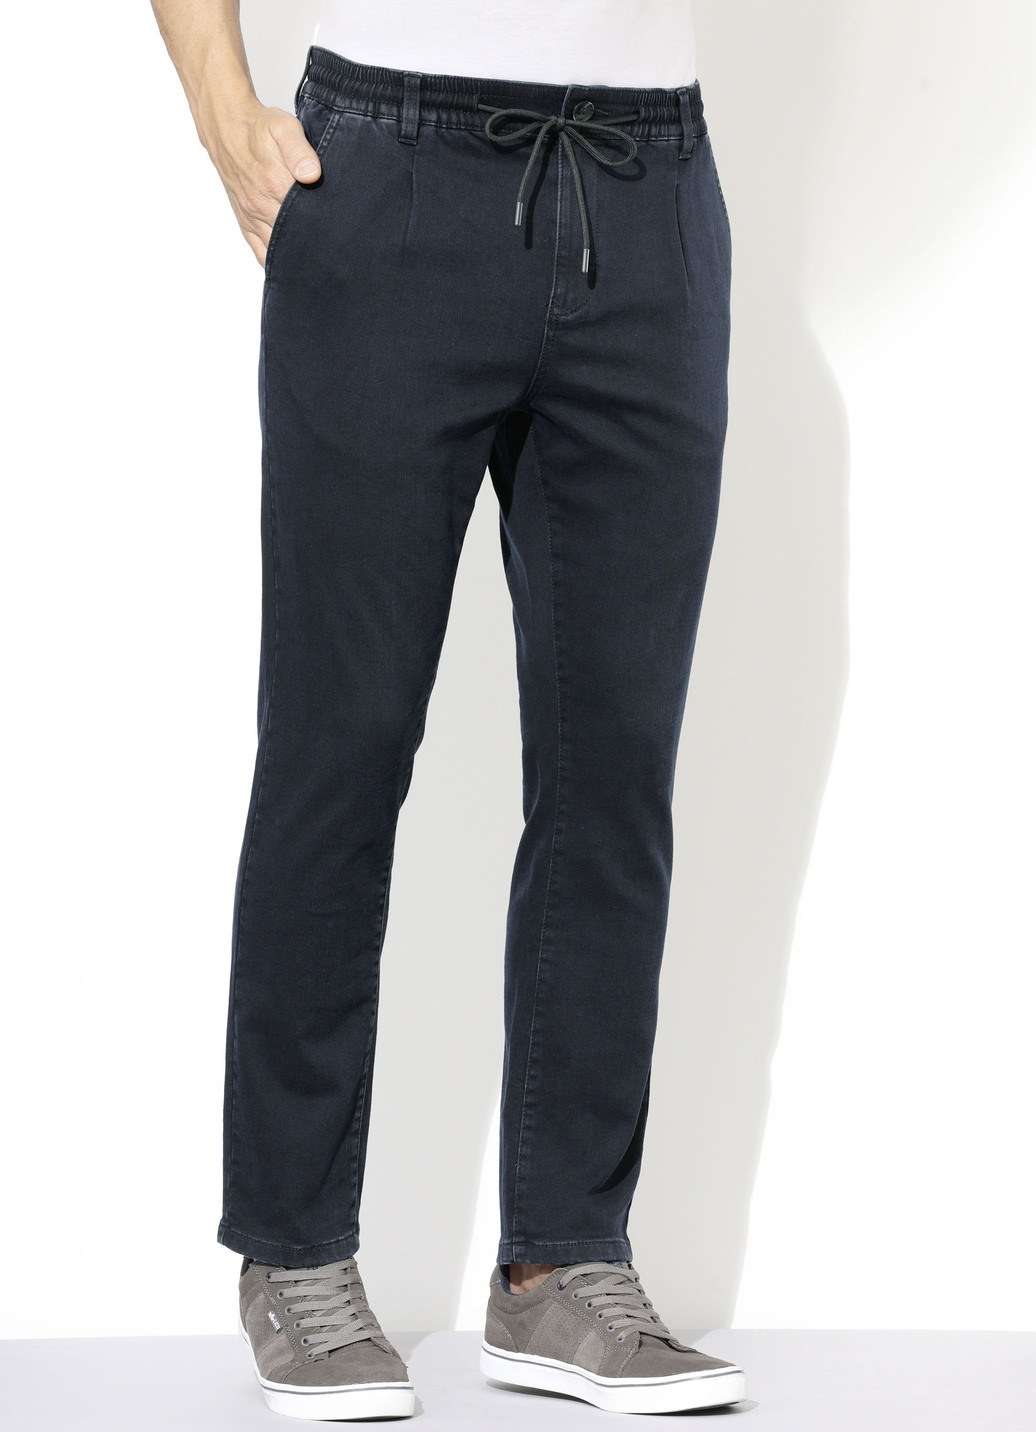 Superstretch-Jeans in 3 Farben, Dunkelblau, Größe 25 von DANNECKER